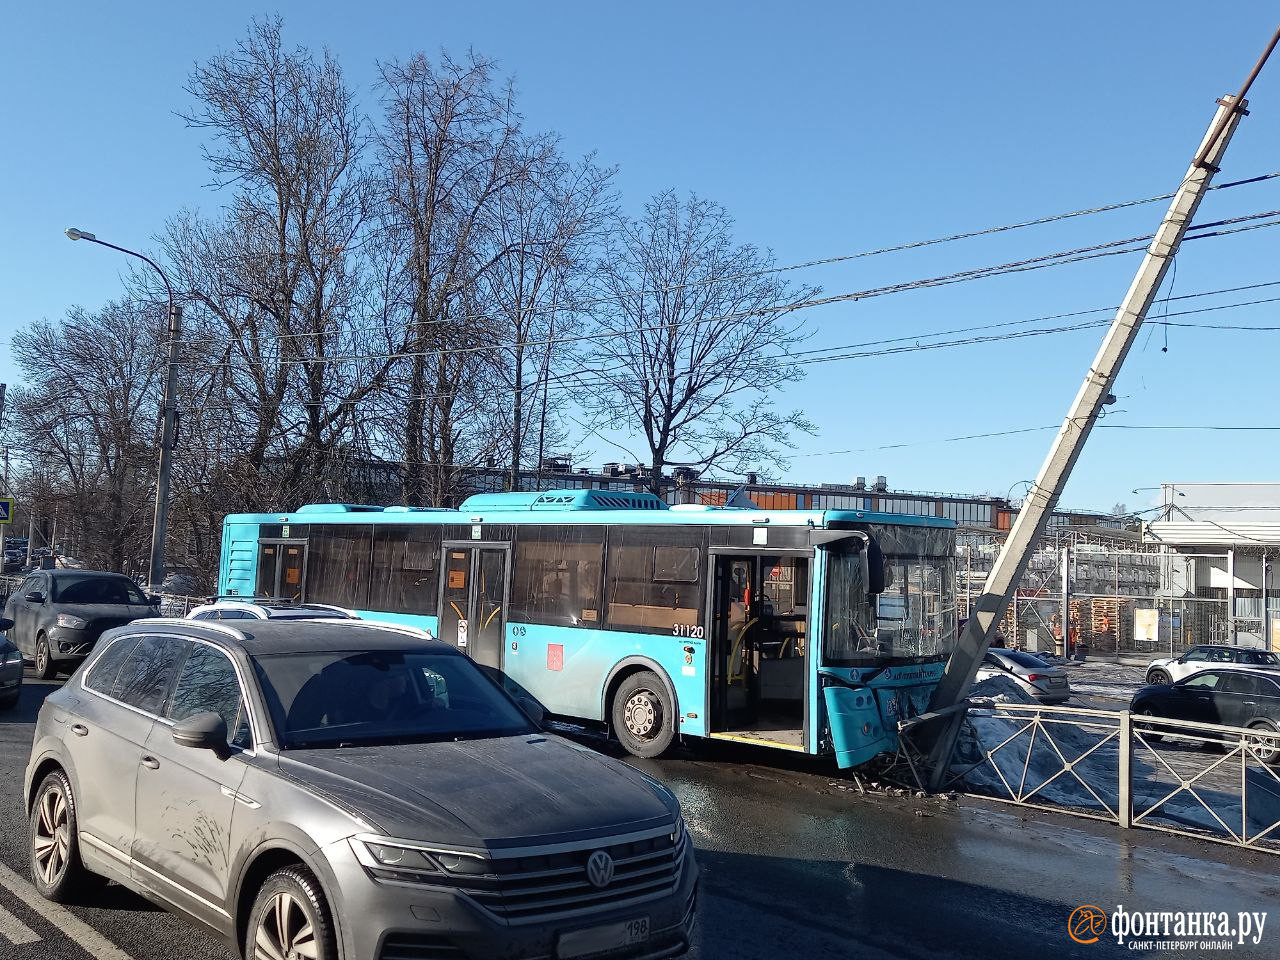 Автобус врезался в фонарный столб на Лахтинском проспекте